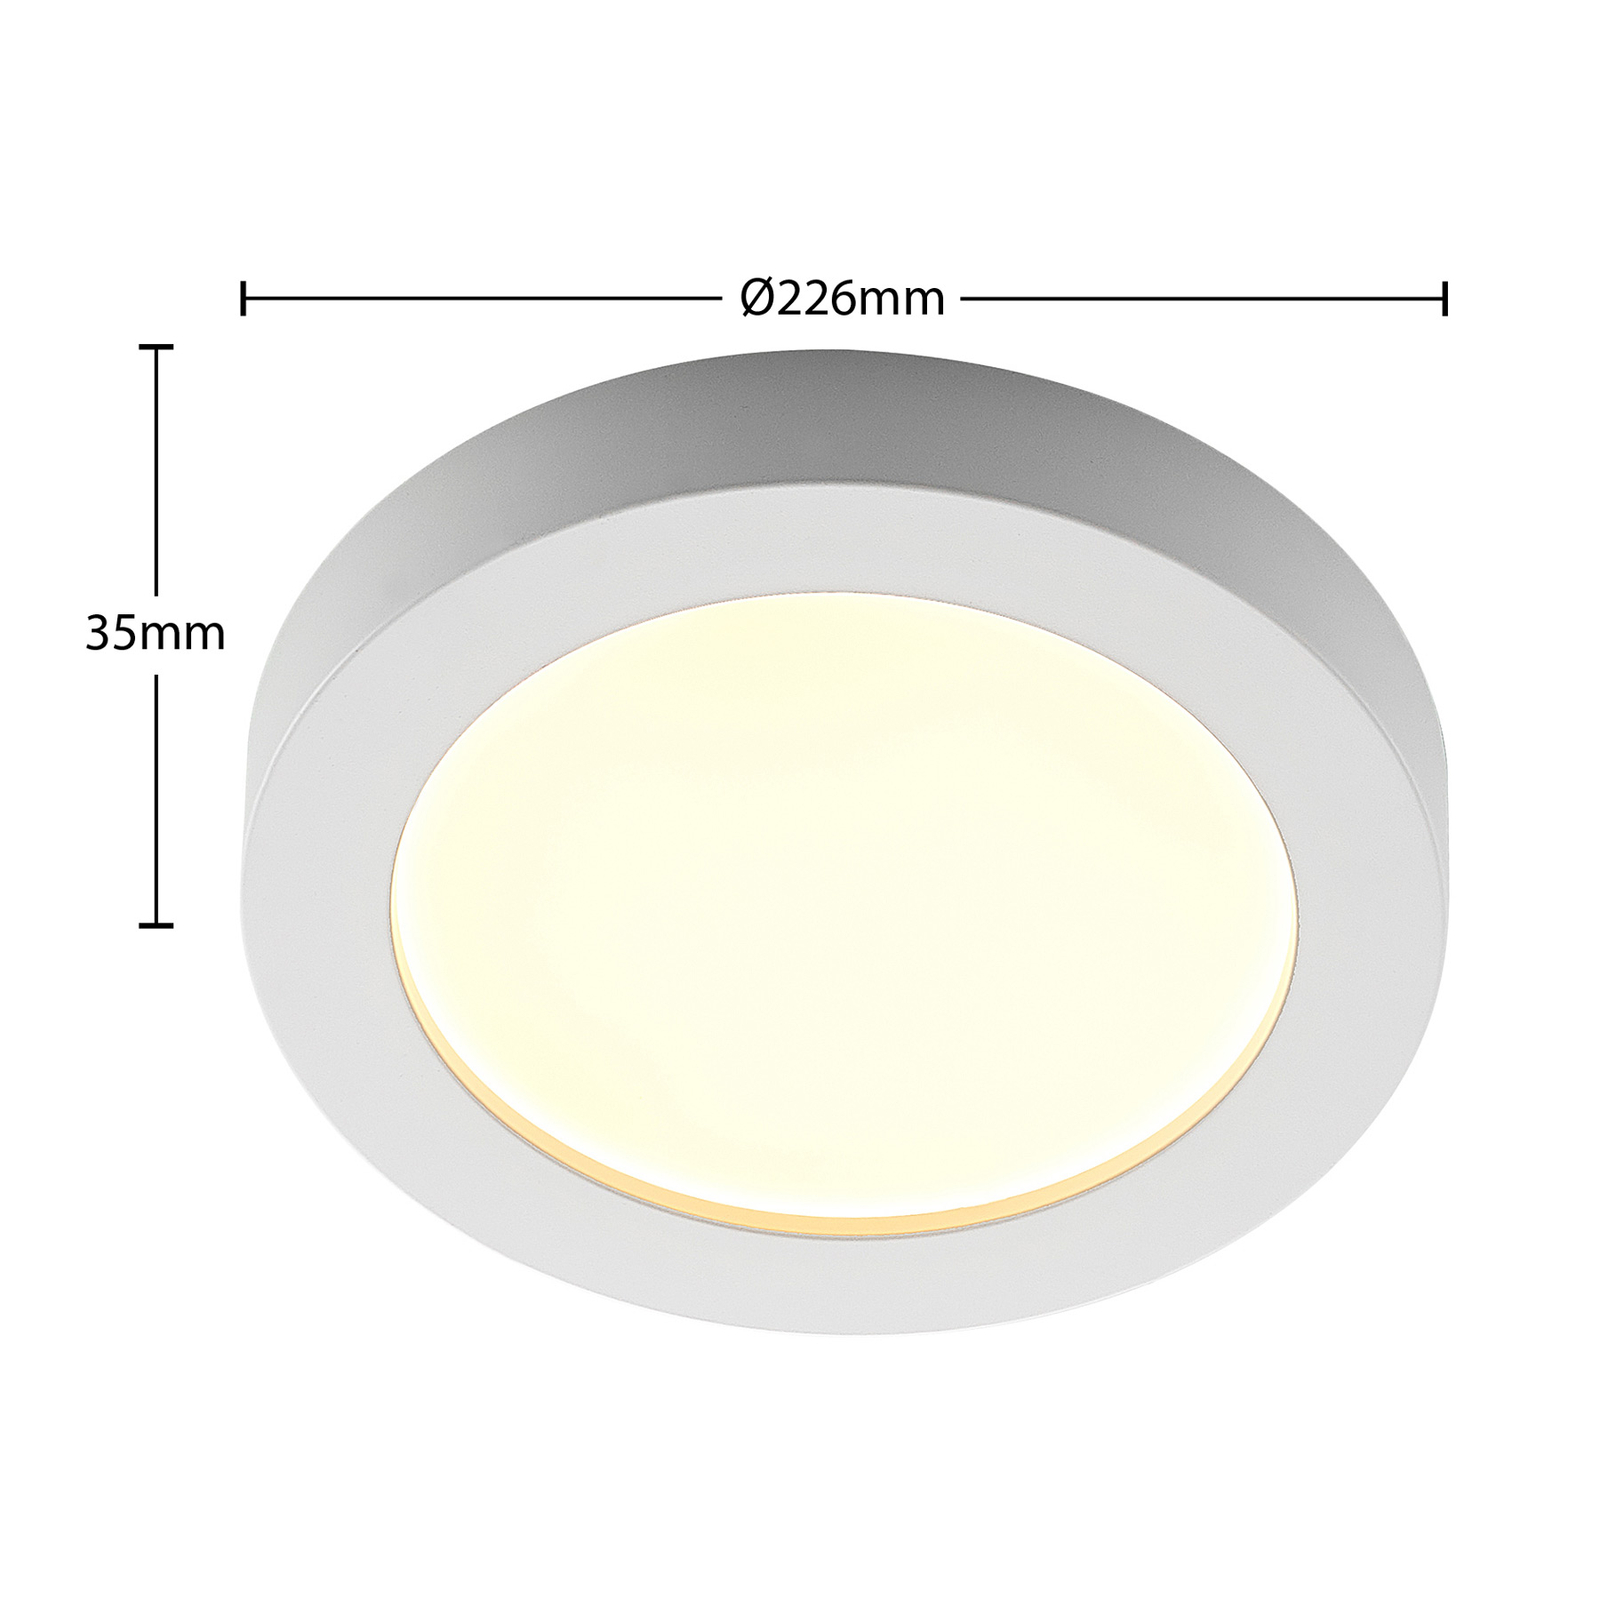 Prios Edwina LED-Deckenleuchte, weiß, 22,6 cm